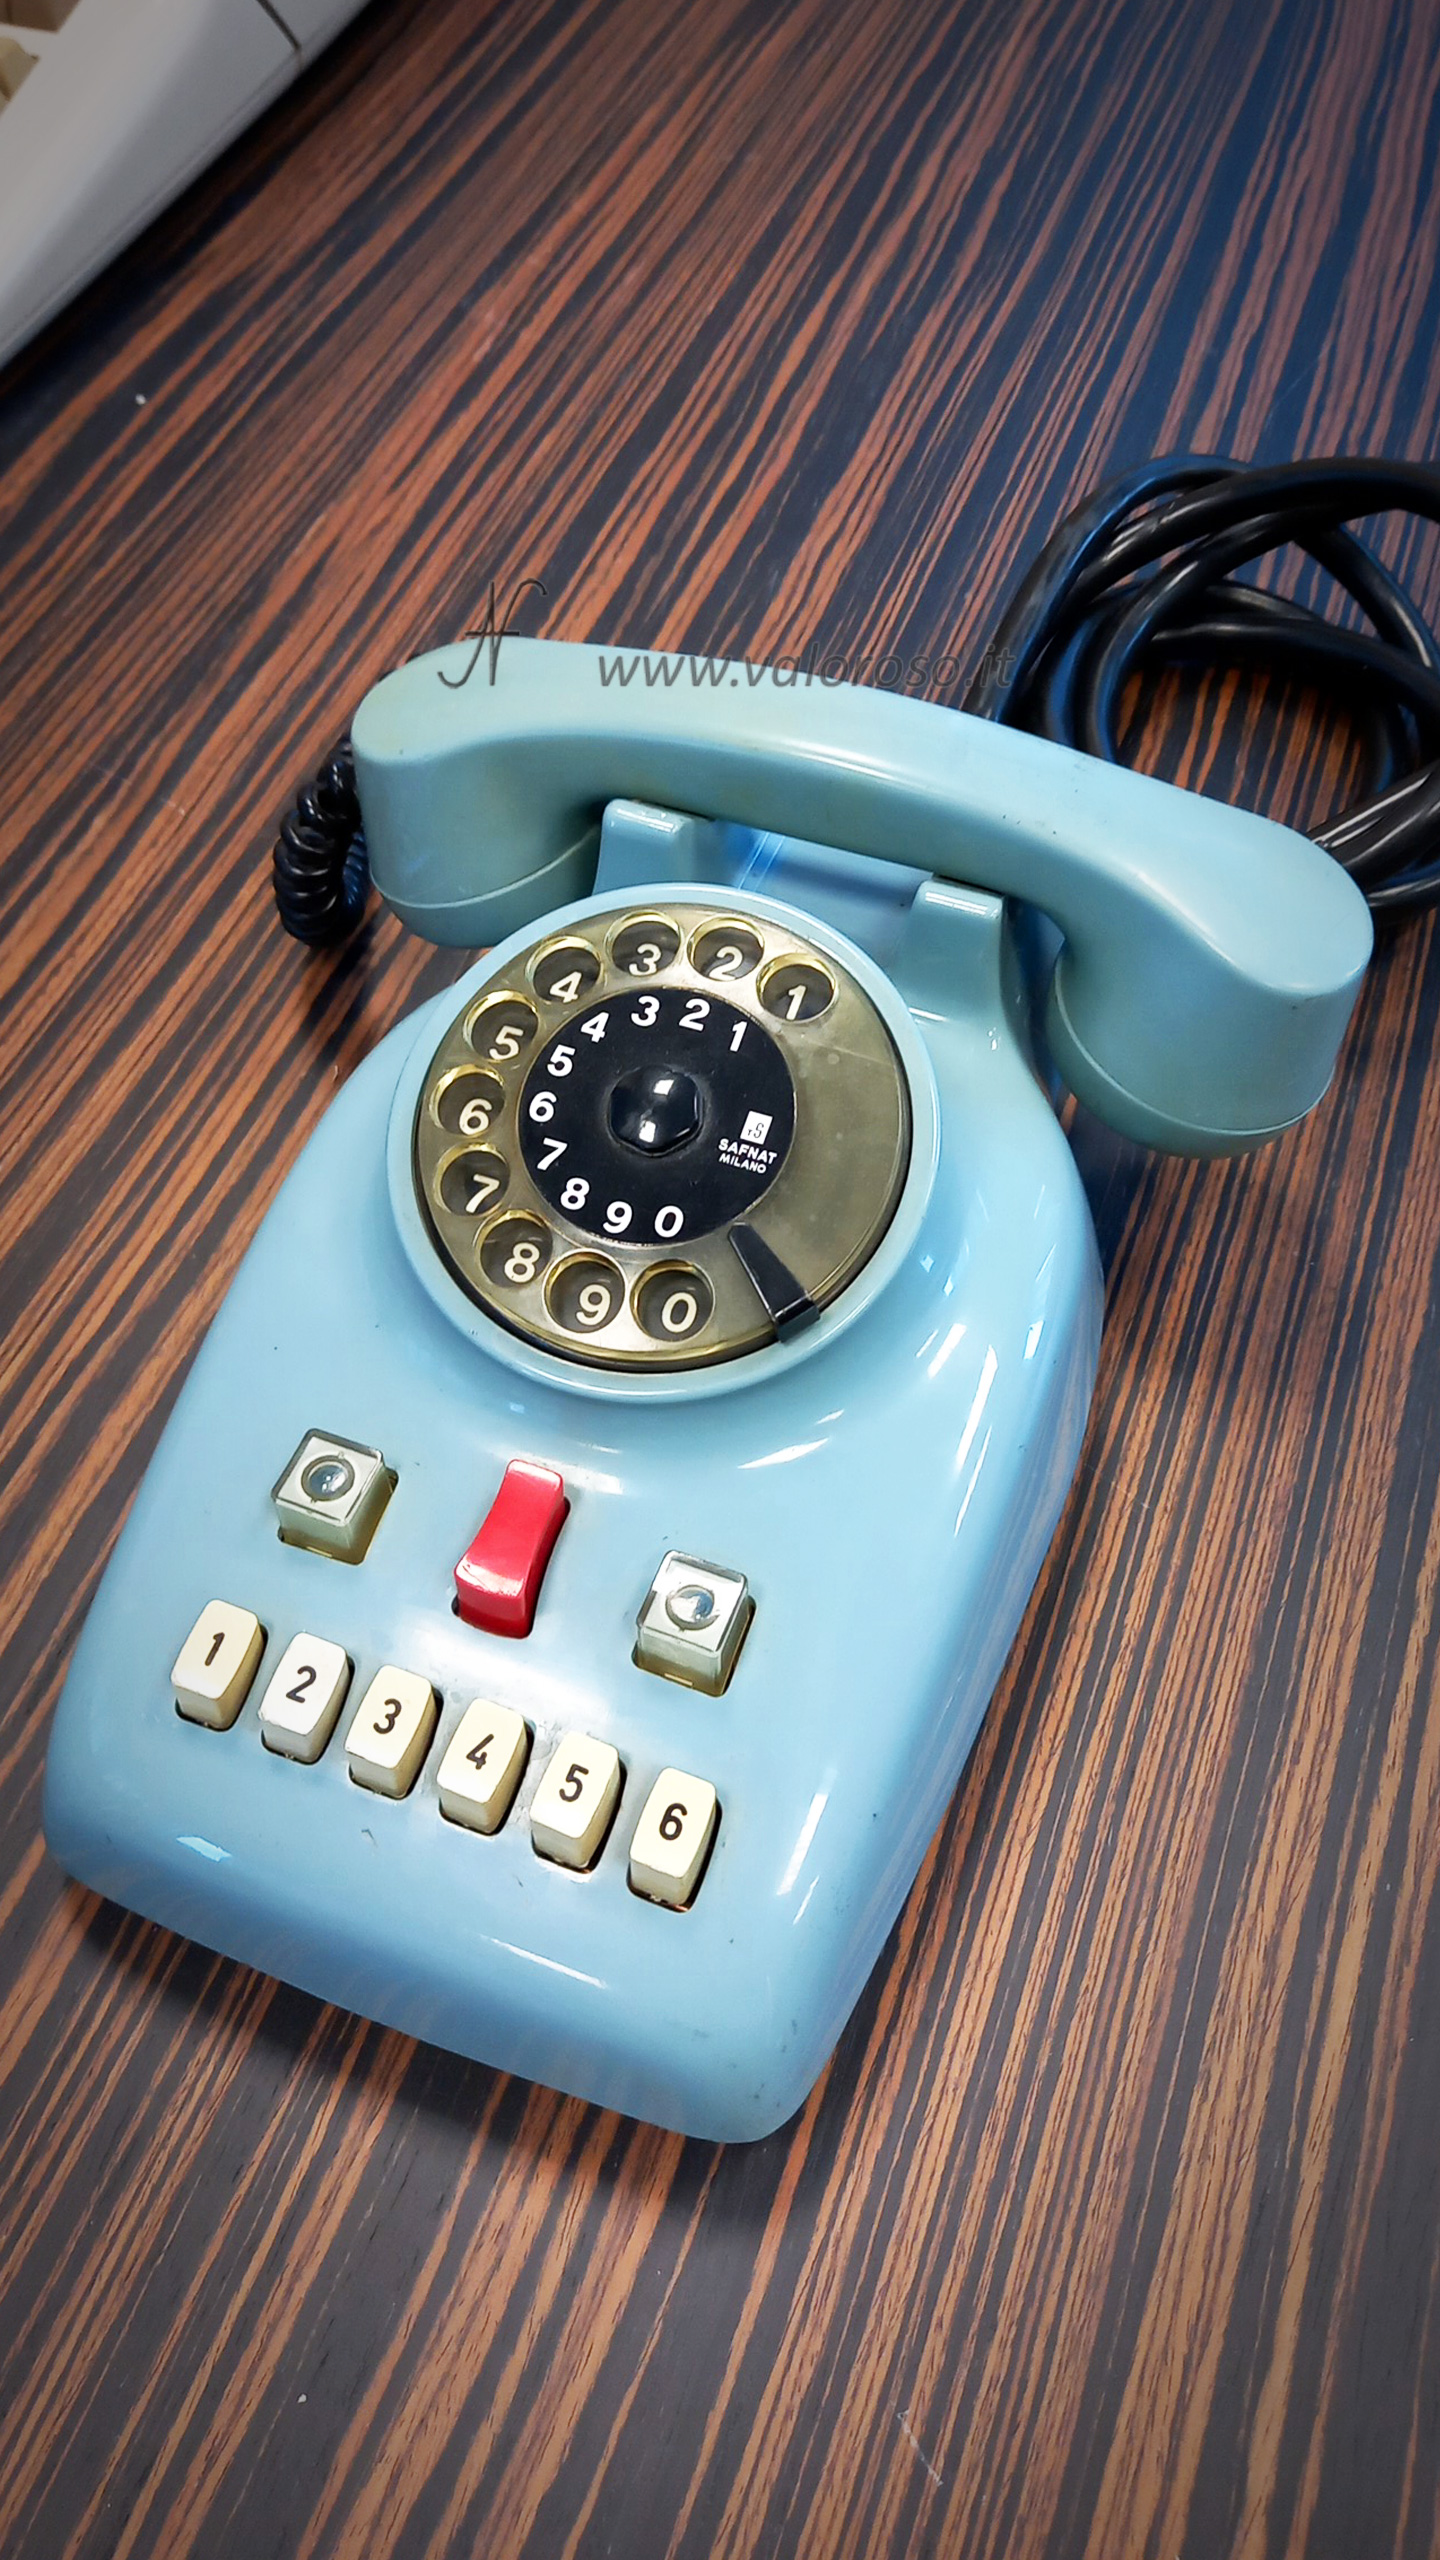 Telefono a disco Safnat Milano anni 70, pulsanti per interni, disco con i numeri, telefono analogico